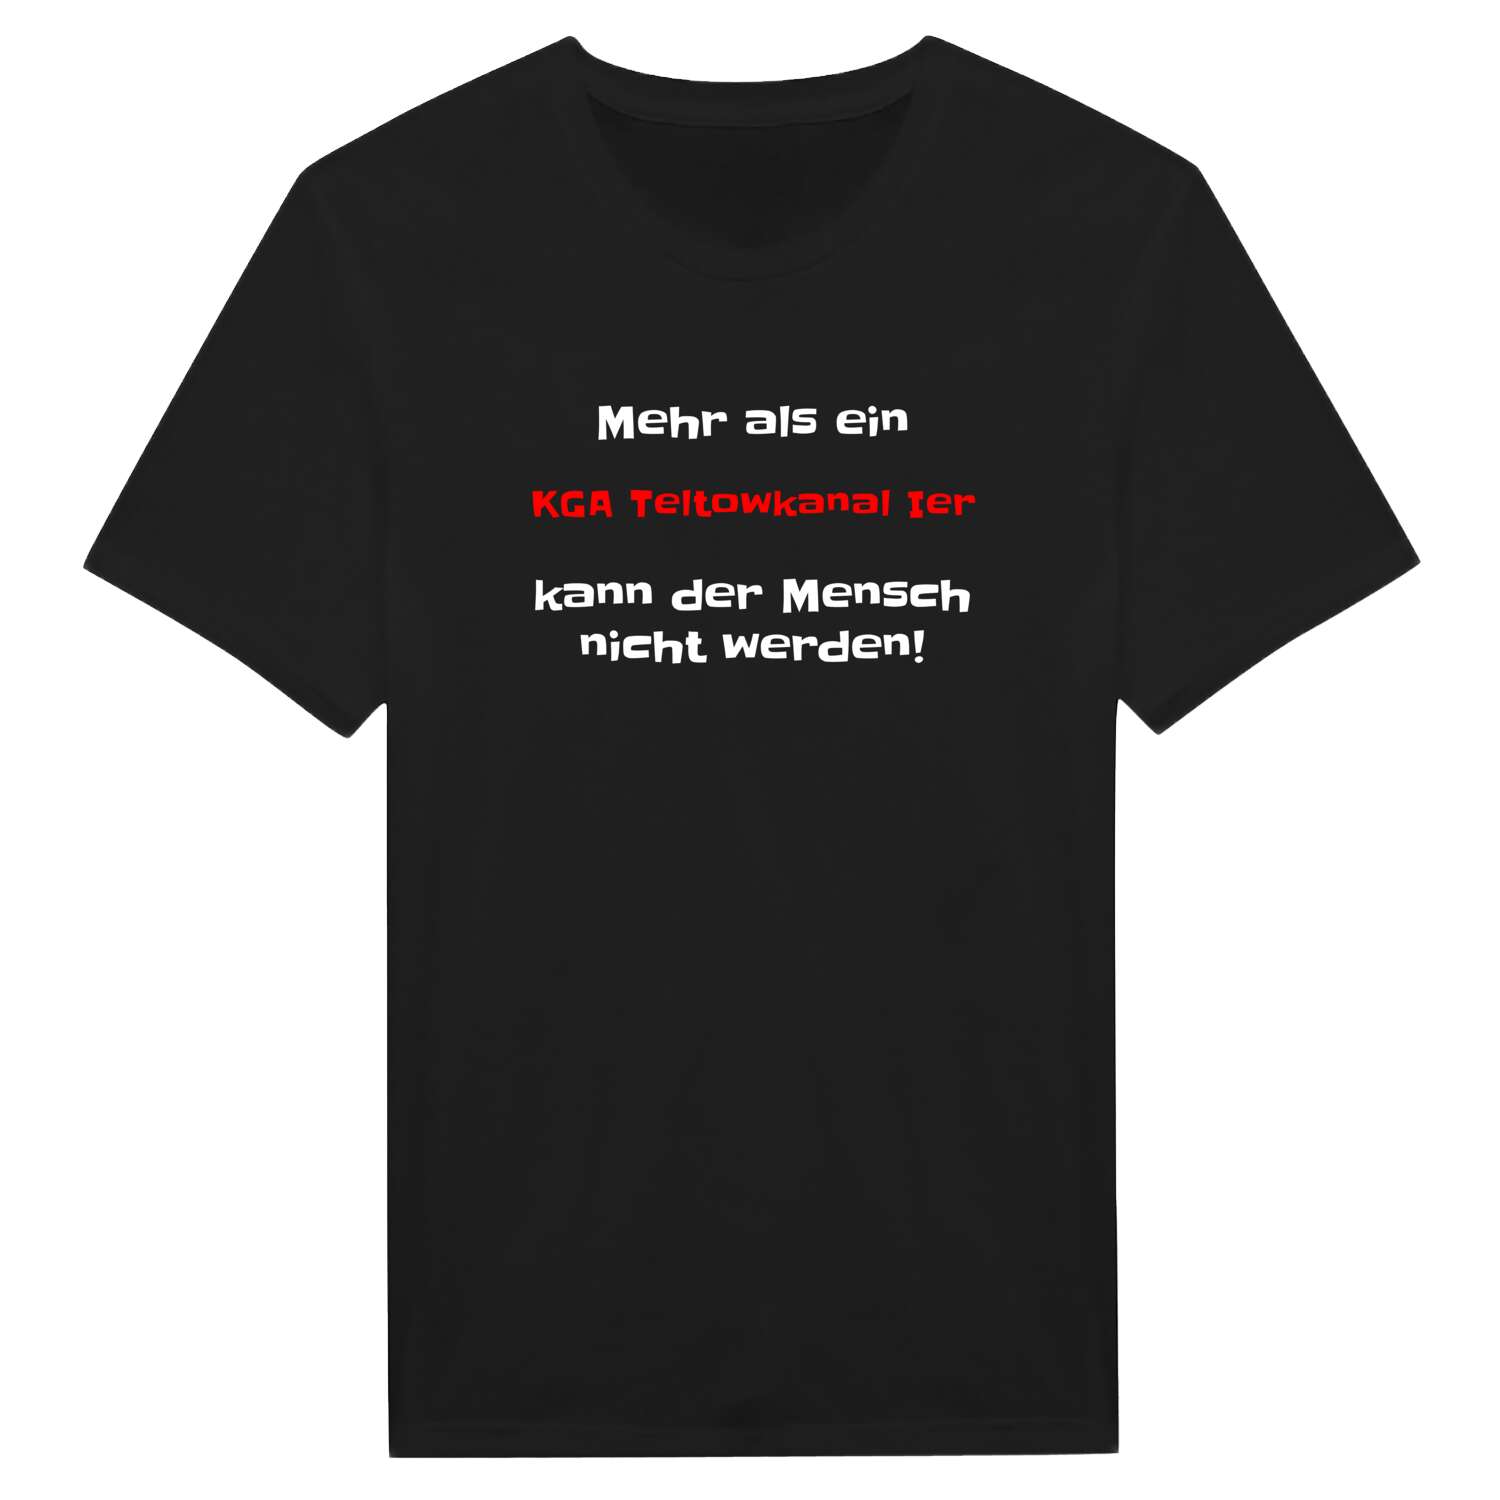 KGA Teltowkanal I T-Shirt »Mehr als ein«